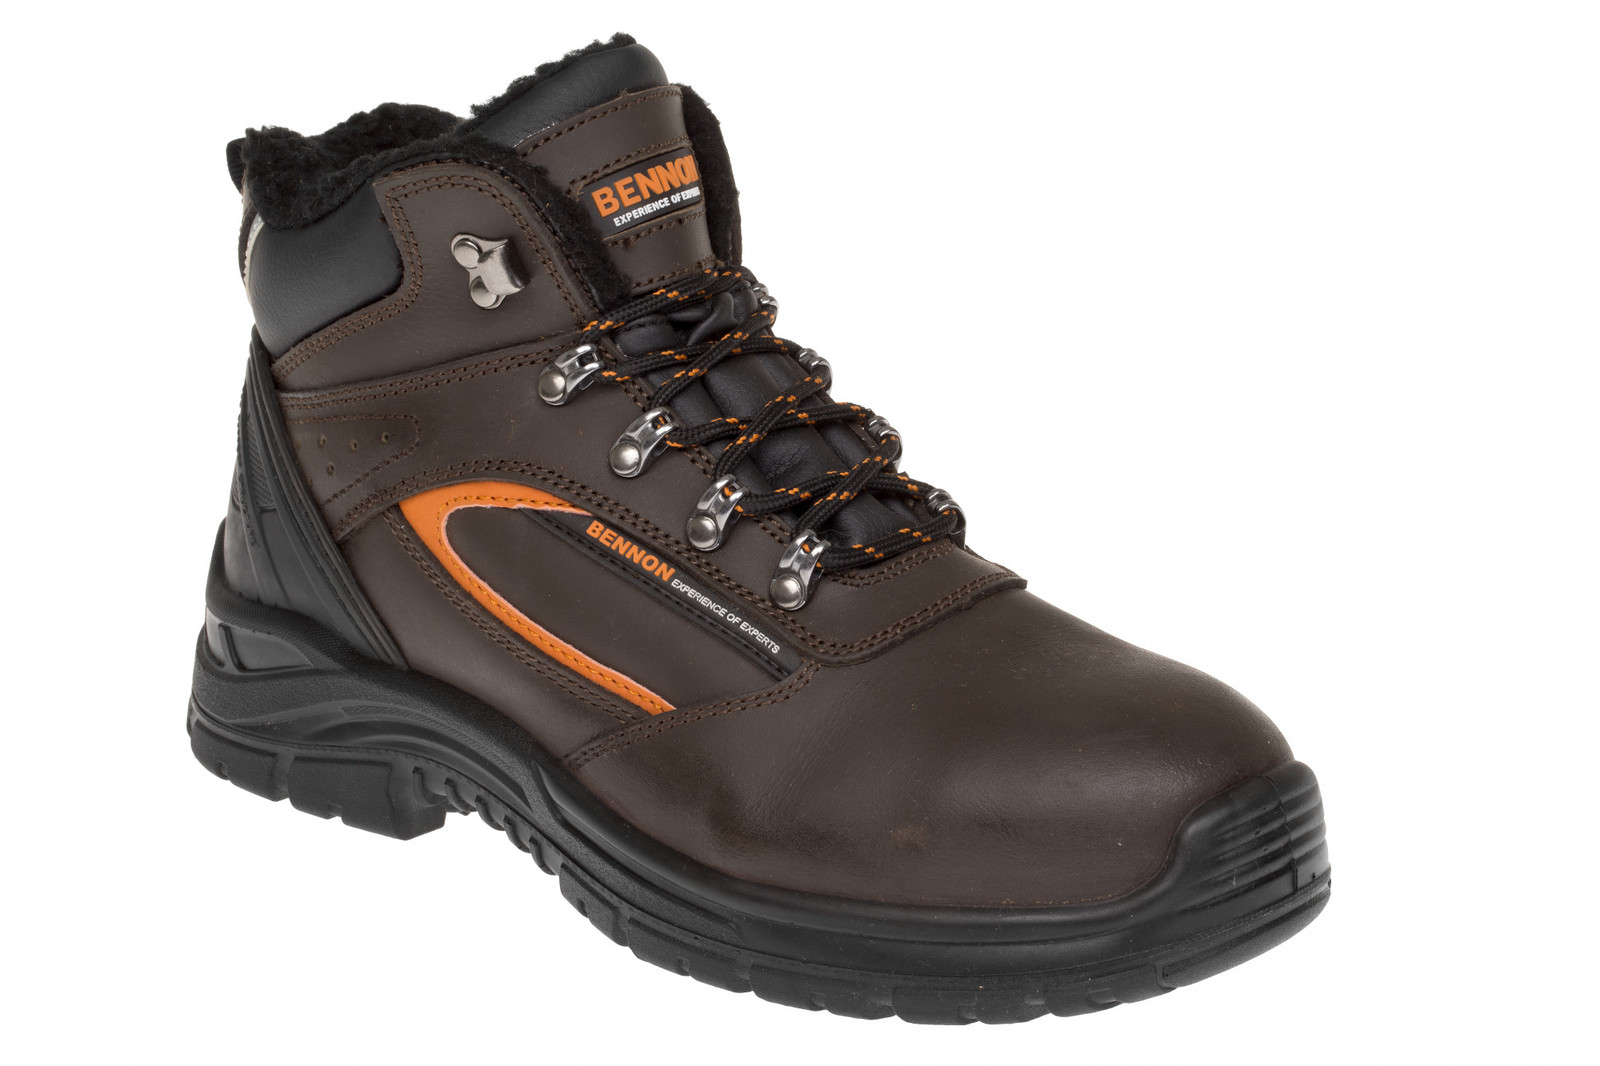 Zimná bezpečnostná obuv Bennon Farmis S3 Winter - veľkosť: 47, farba: hnedá